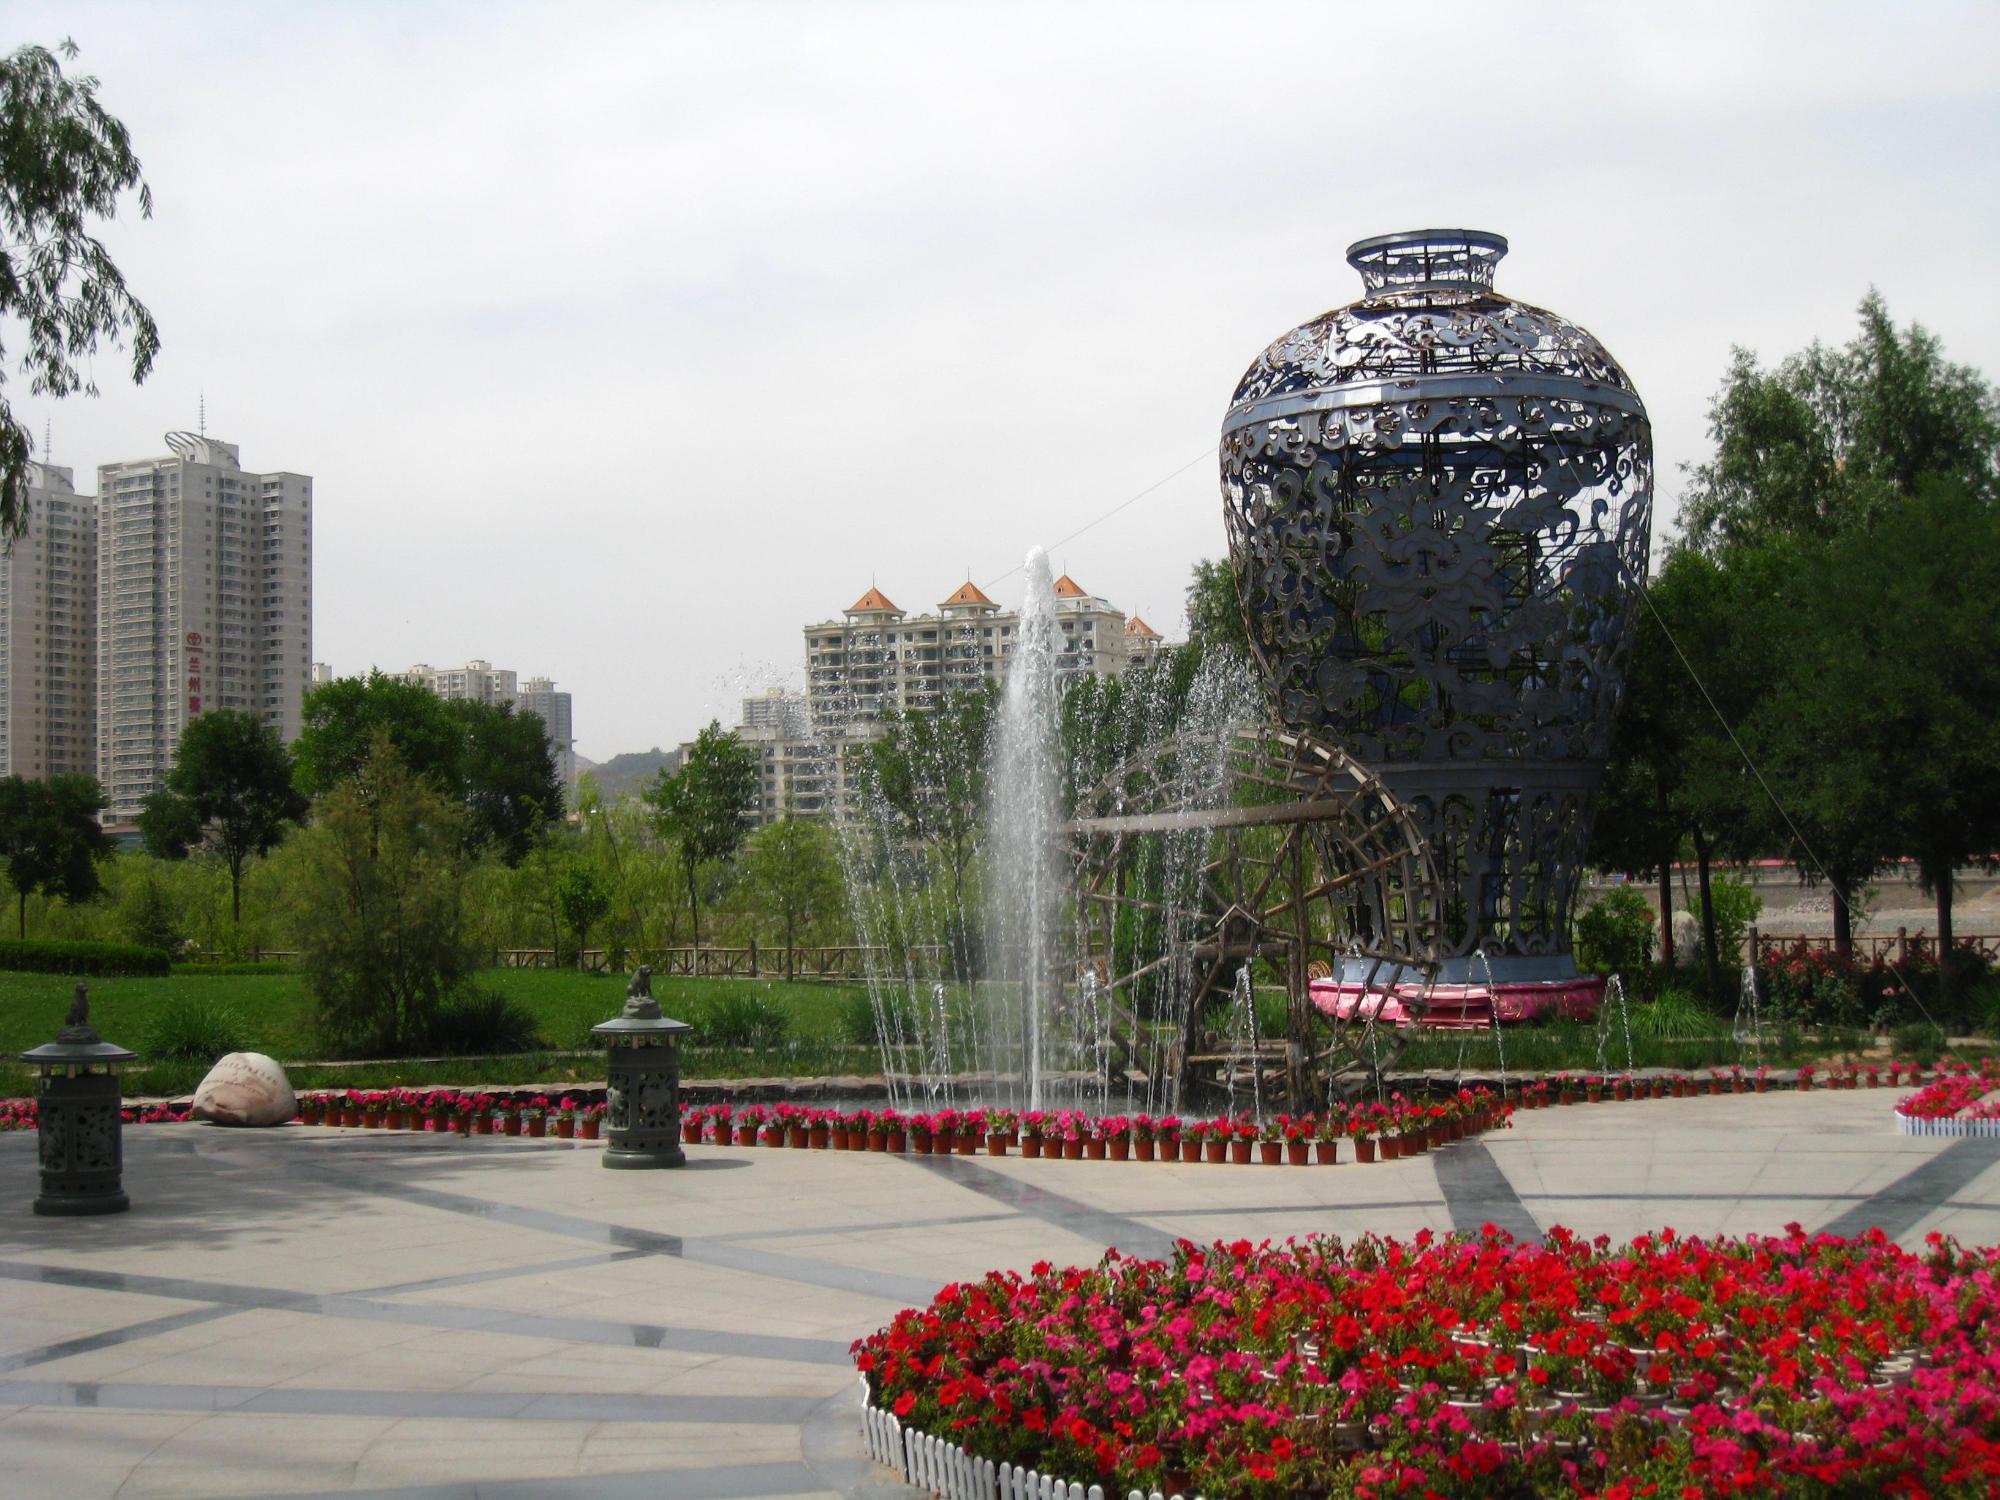 噴水と赤い花と大きな花瓶のアートが印象的な公園の写真